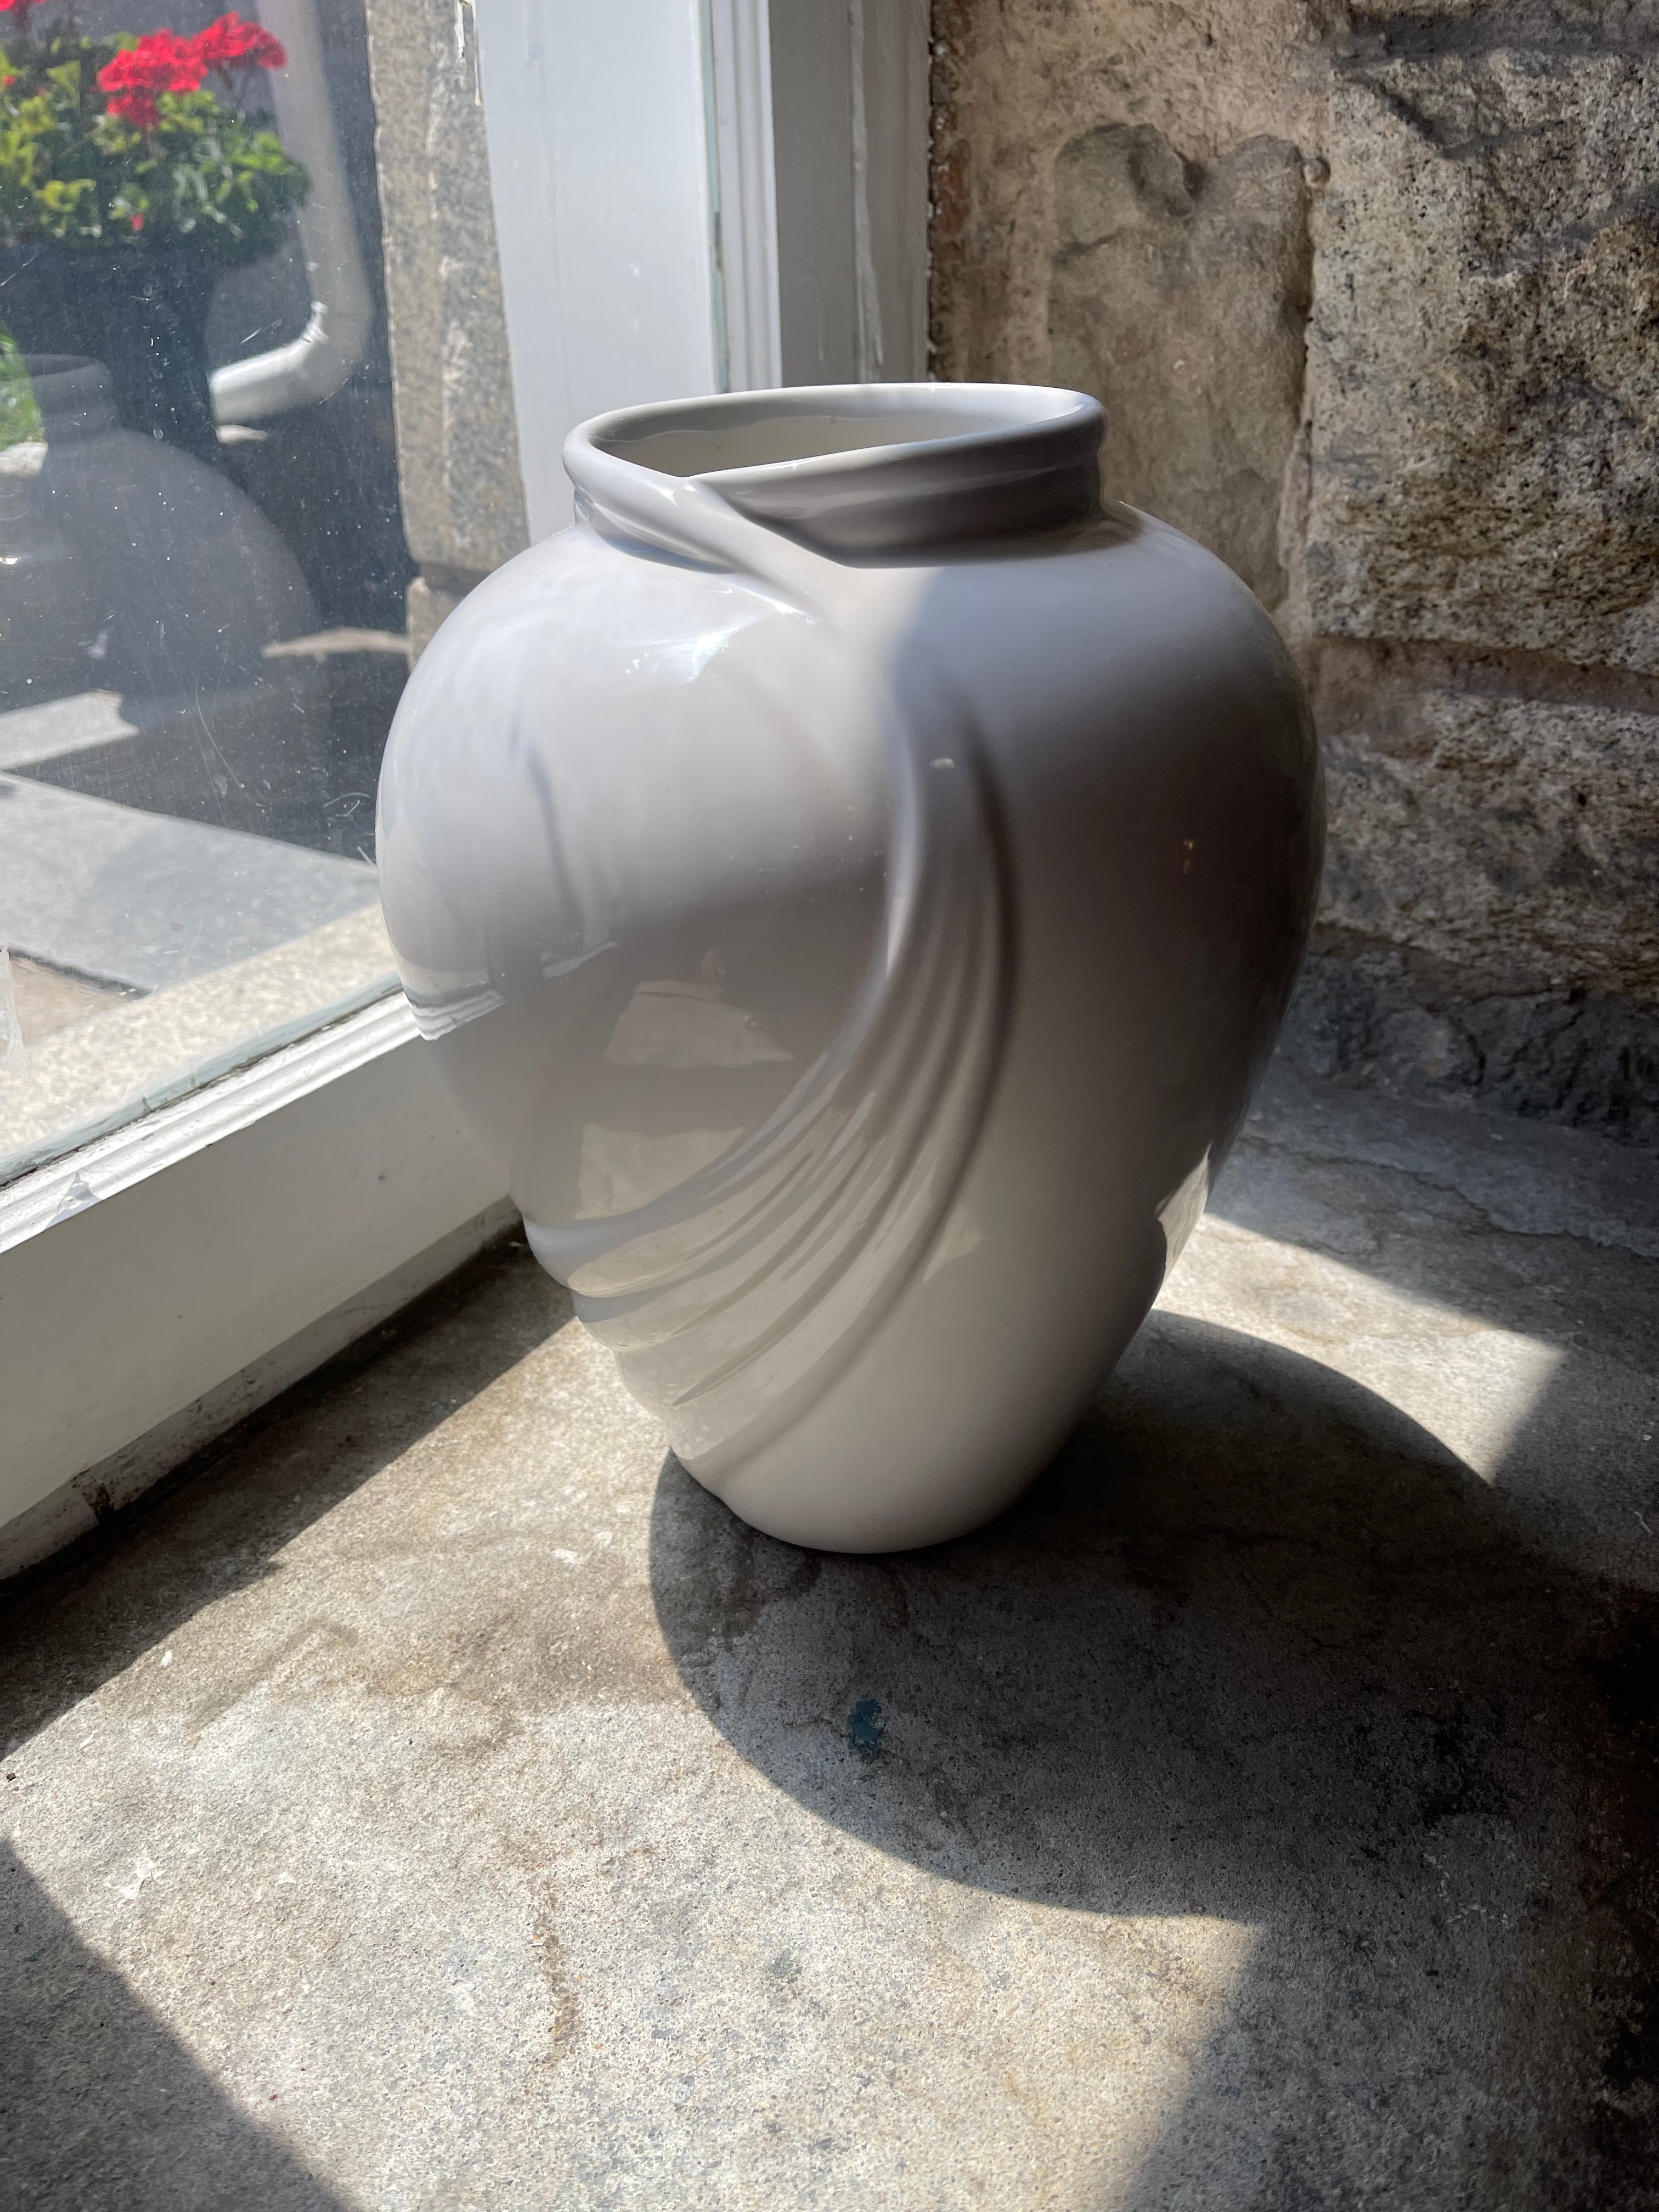 White Haeger Vase